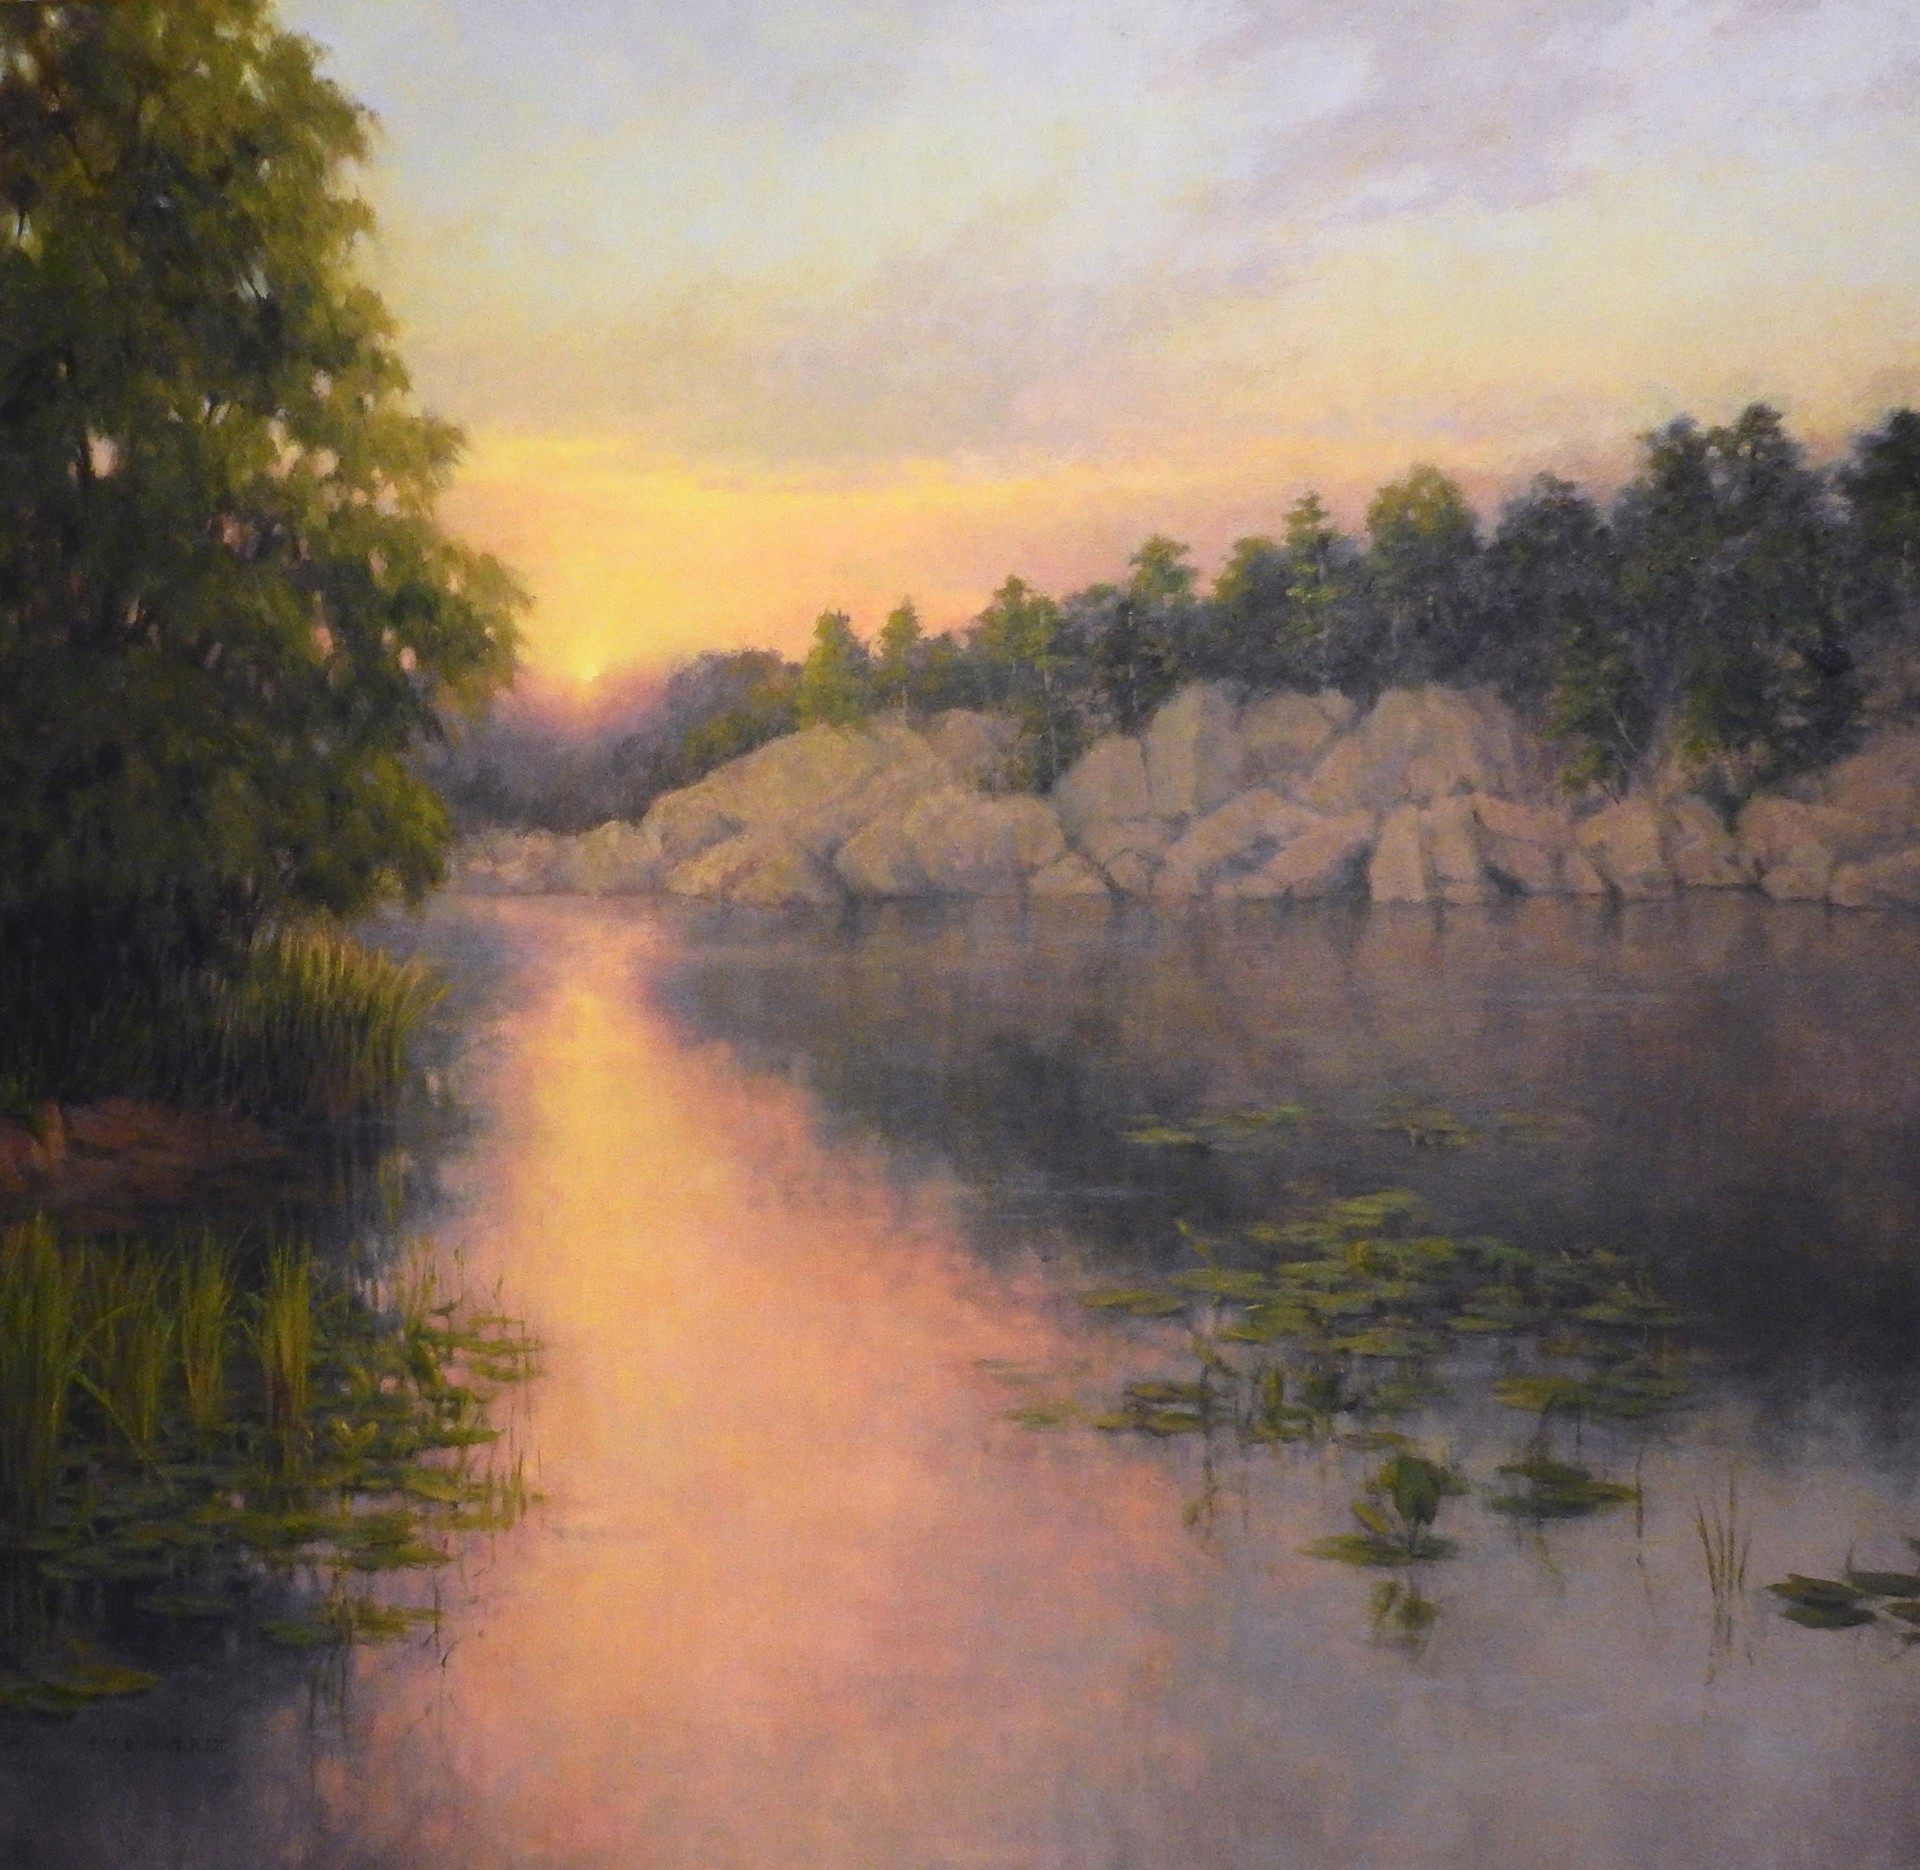 Black Pond Sunset by Jean Schwartz